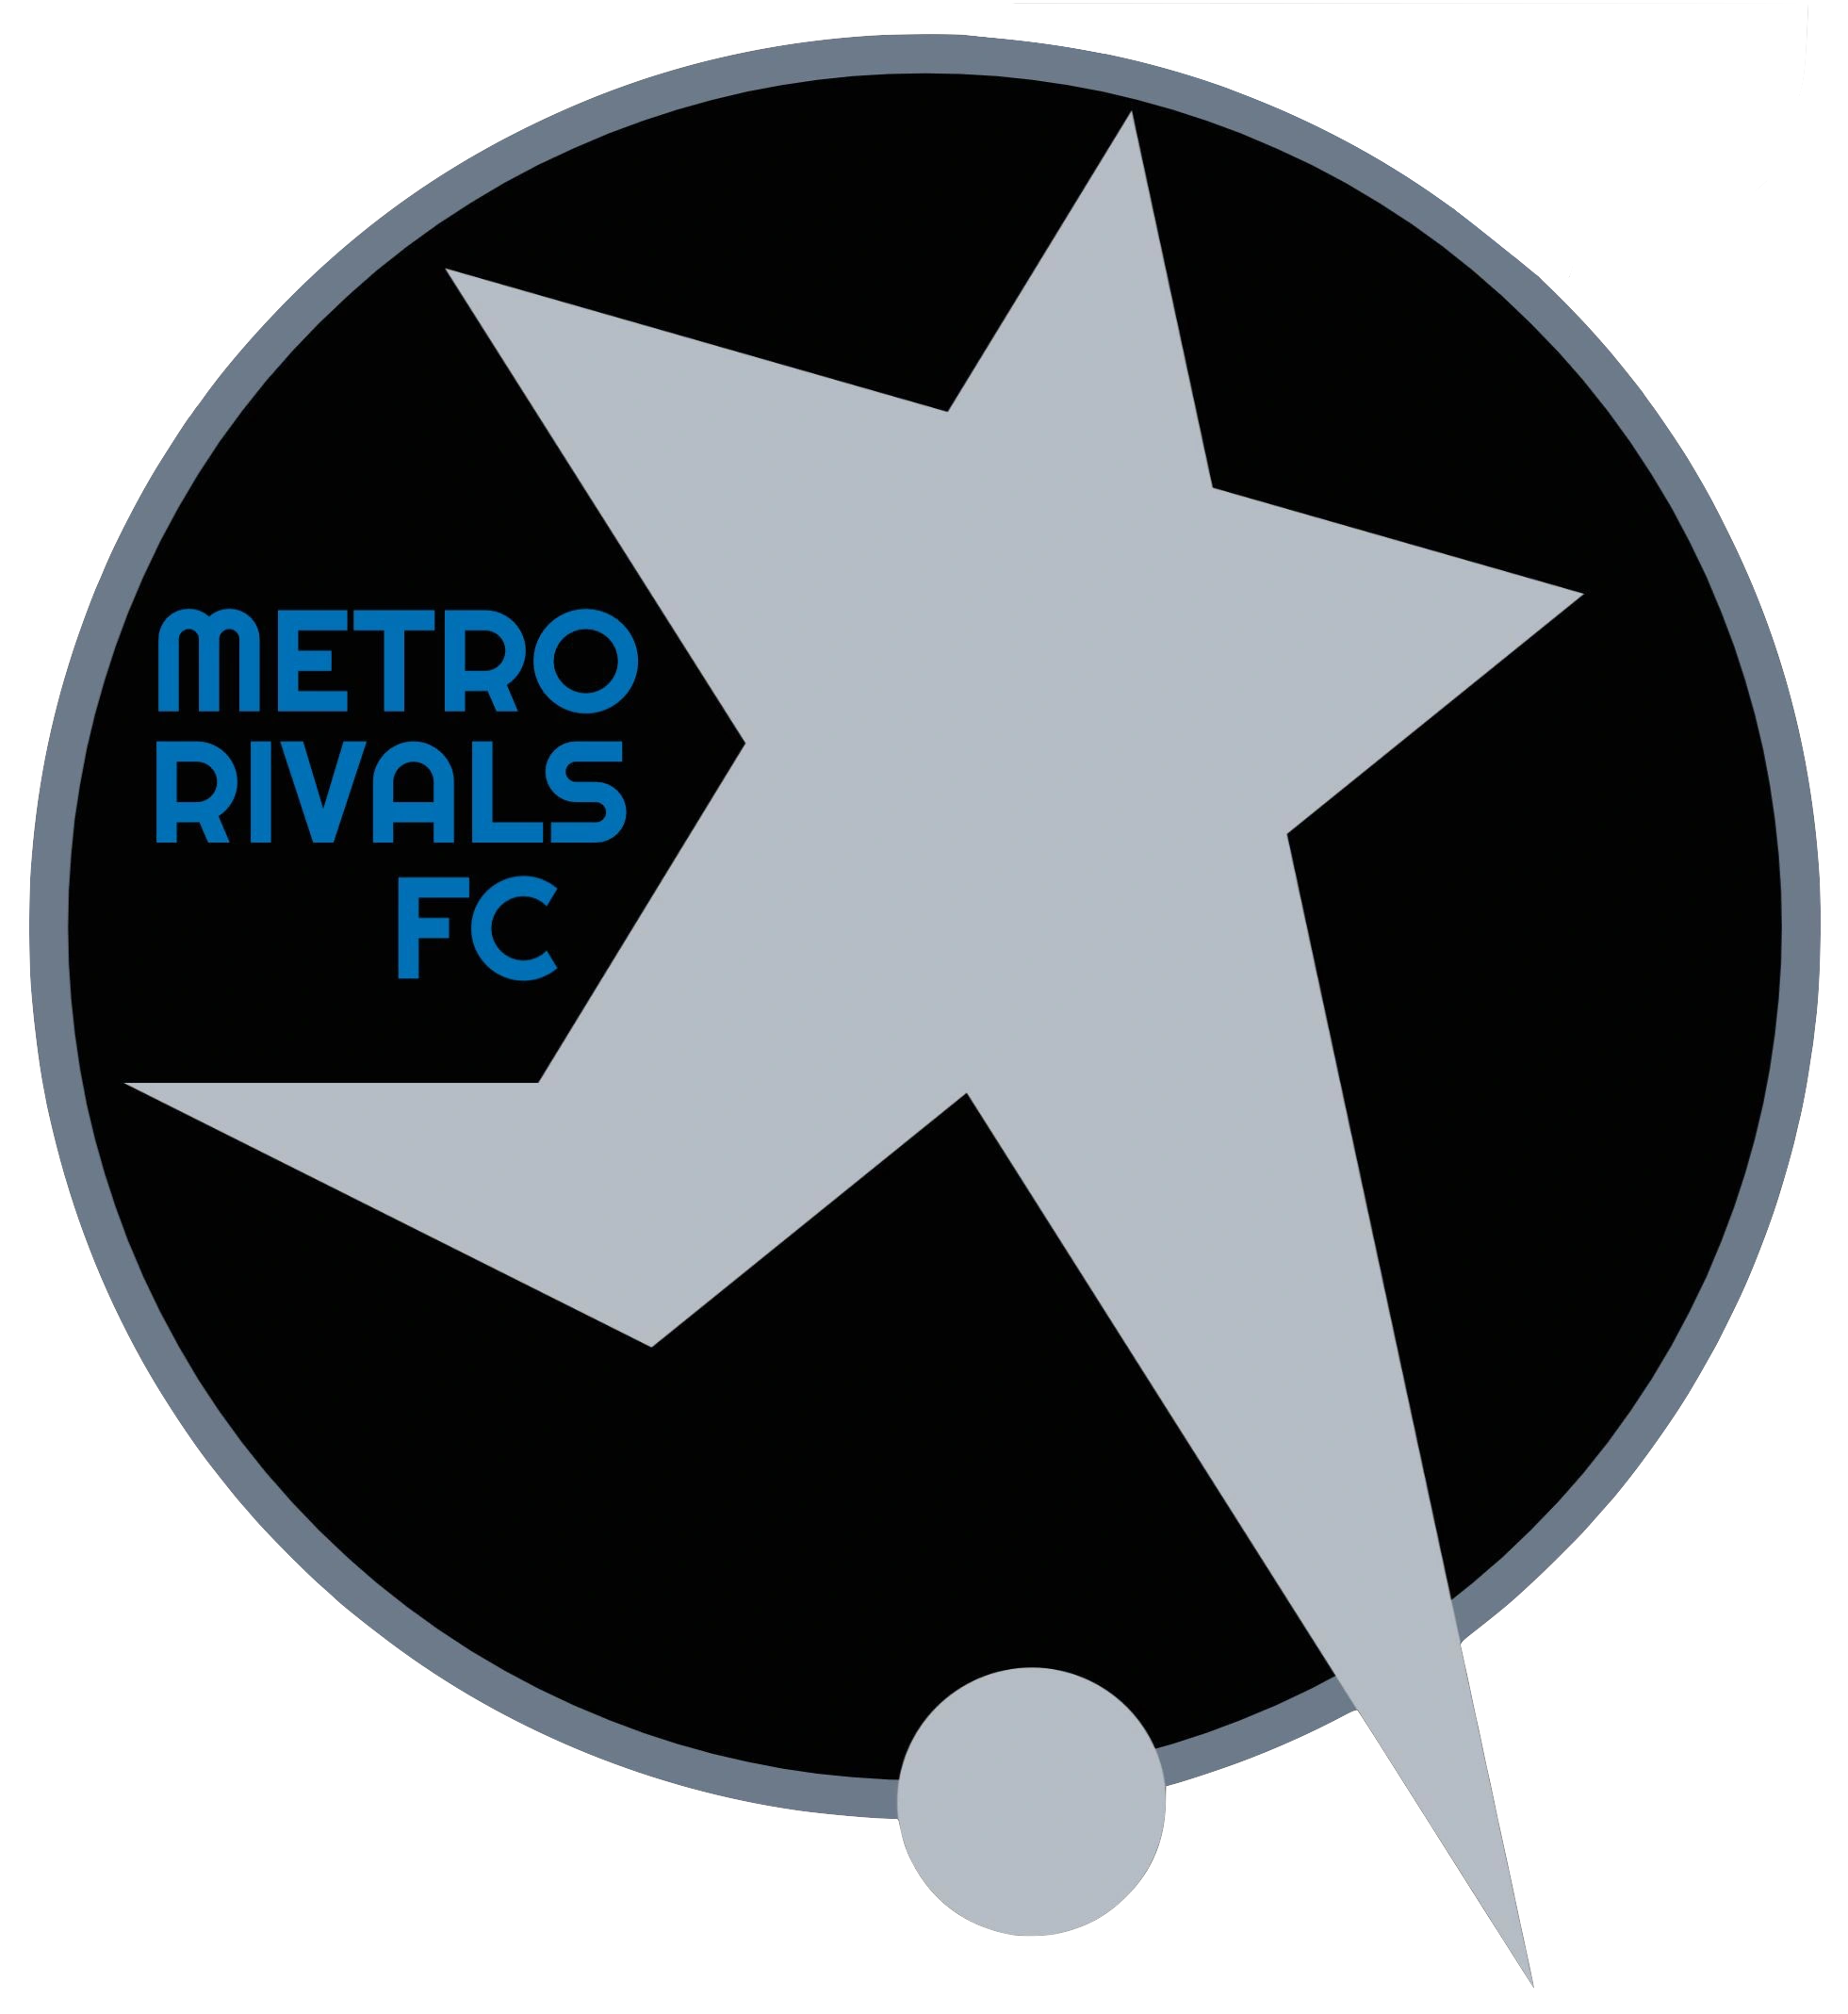 METRO RIVALS FC, PORTLAND OREGON